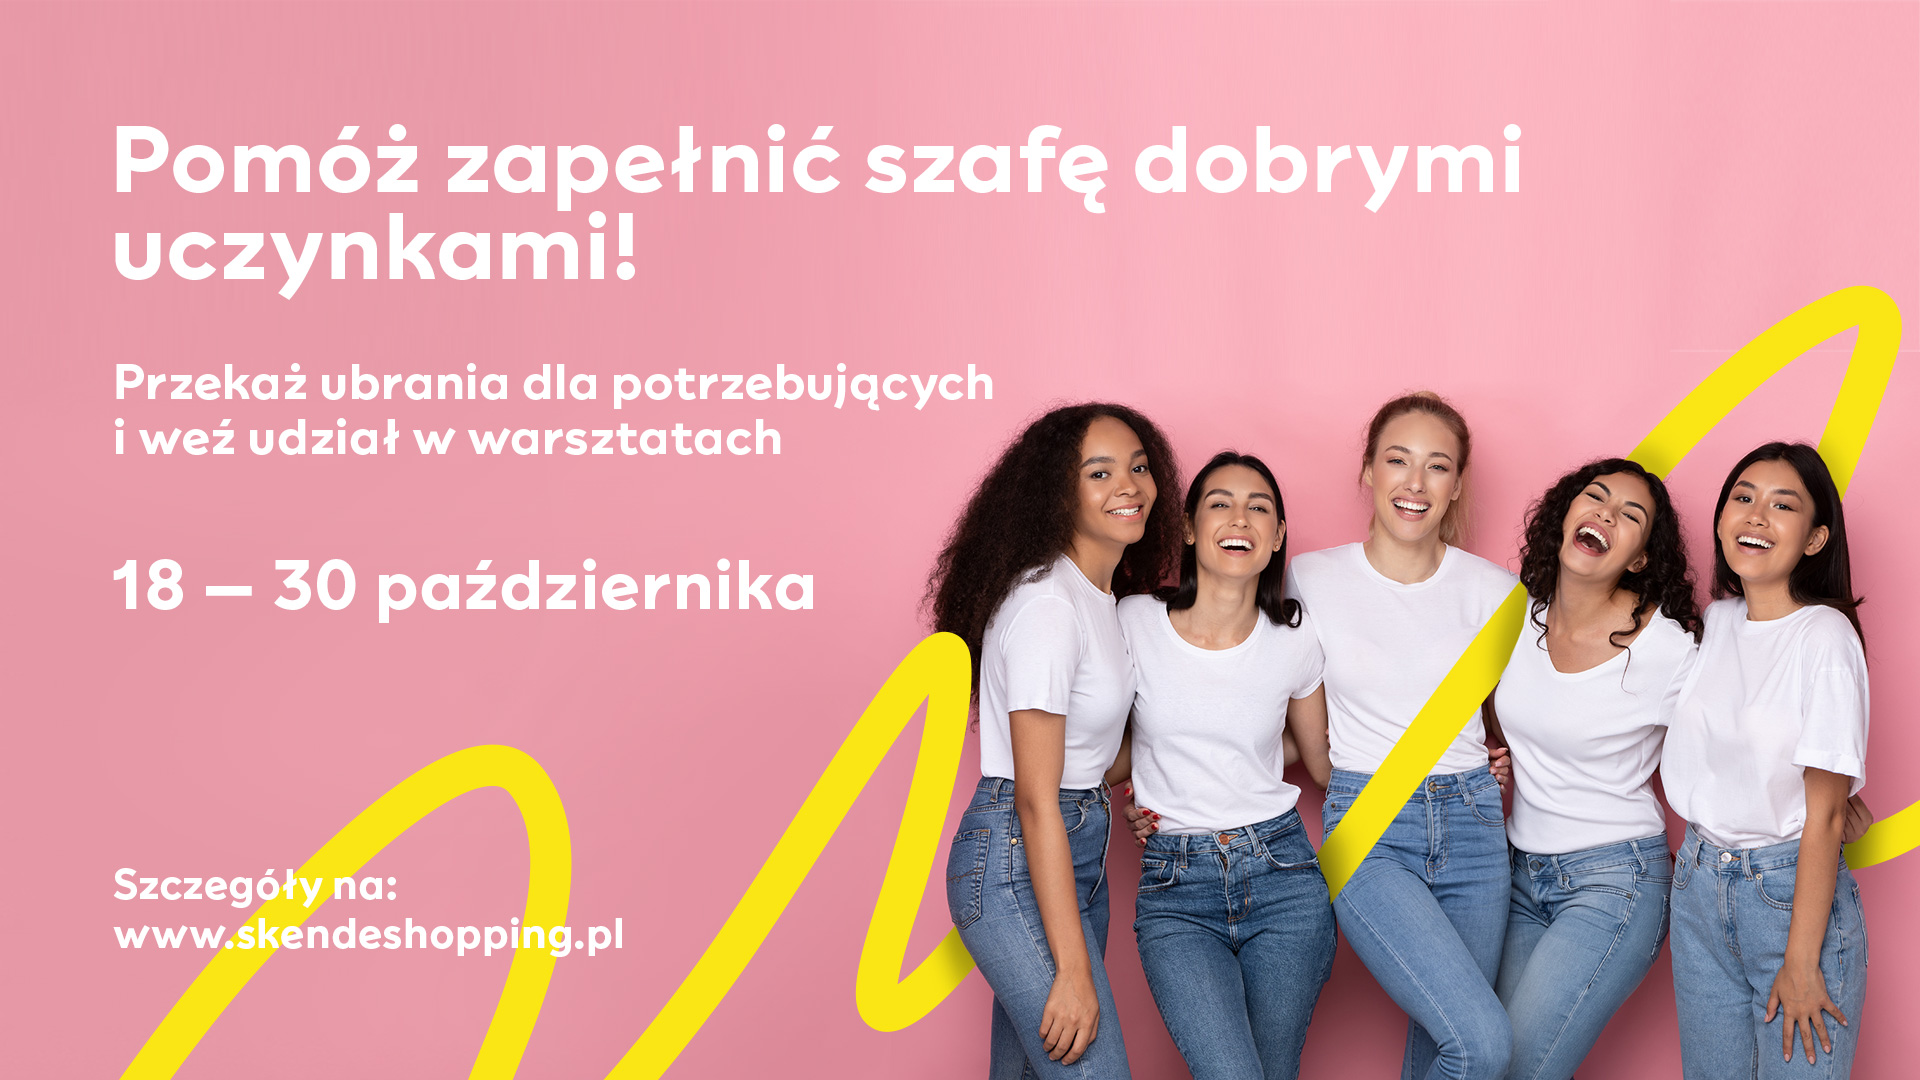 Lublin: Zbierają ubrania dla potrzebujących kobiet. Niedługo ruszy akcja "Szafa dobrych uczynków" - Zdjęcie główne